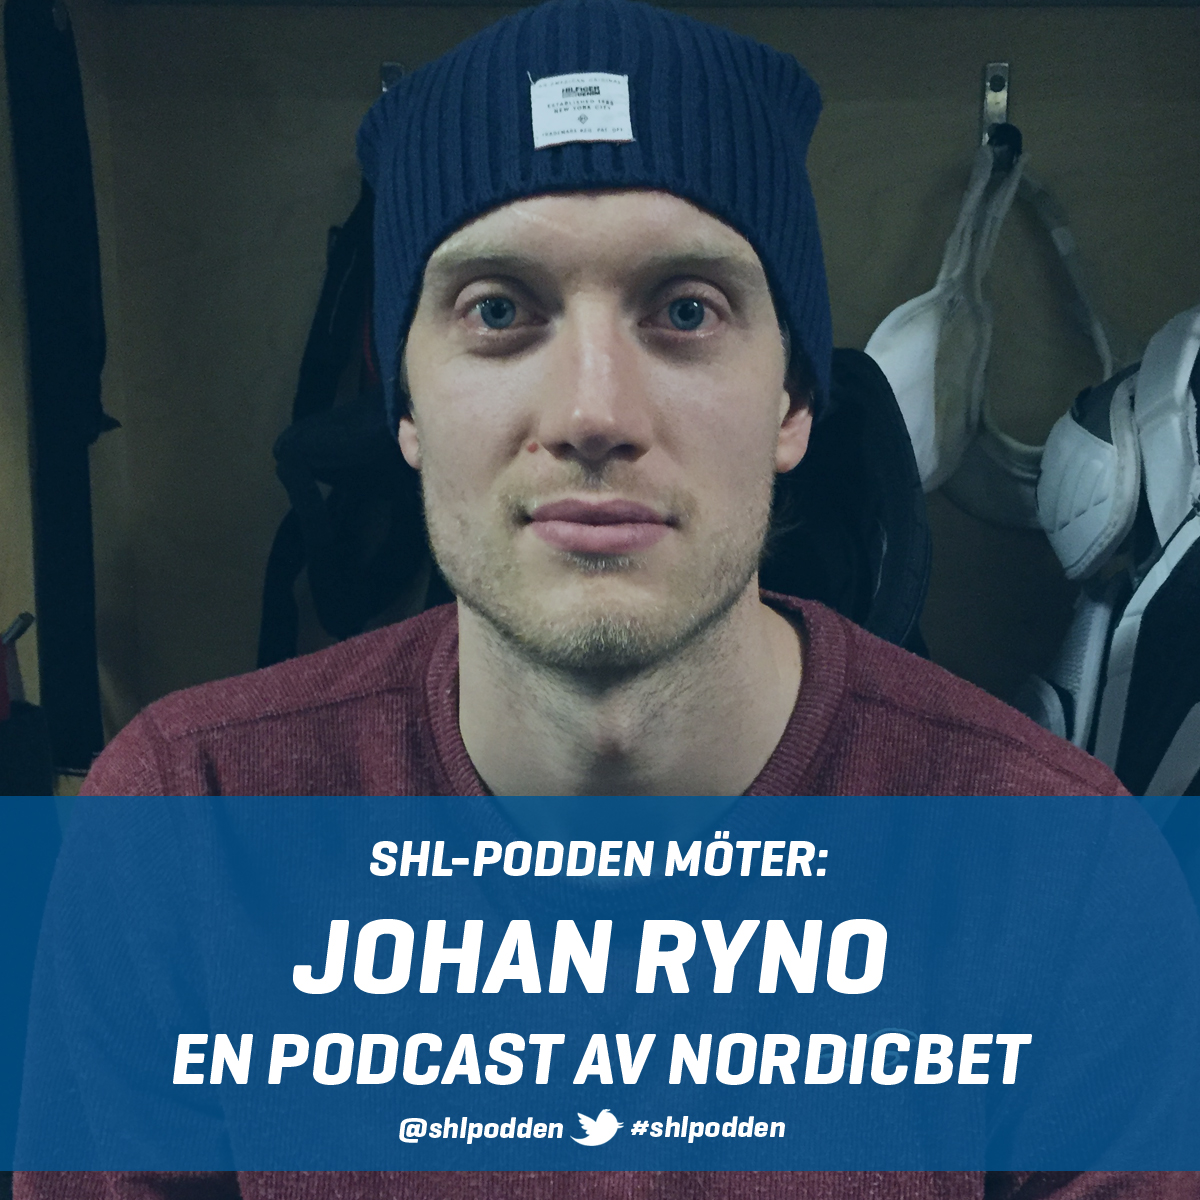 SHL-podden möter – Johan Ryno